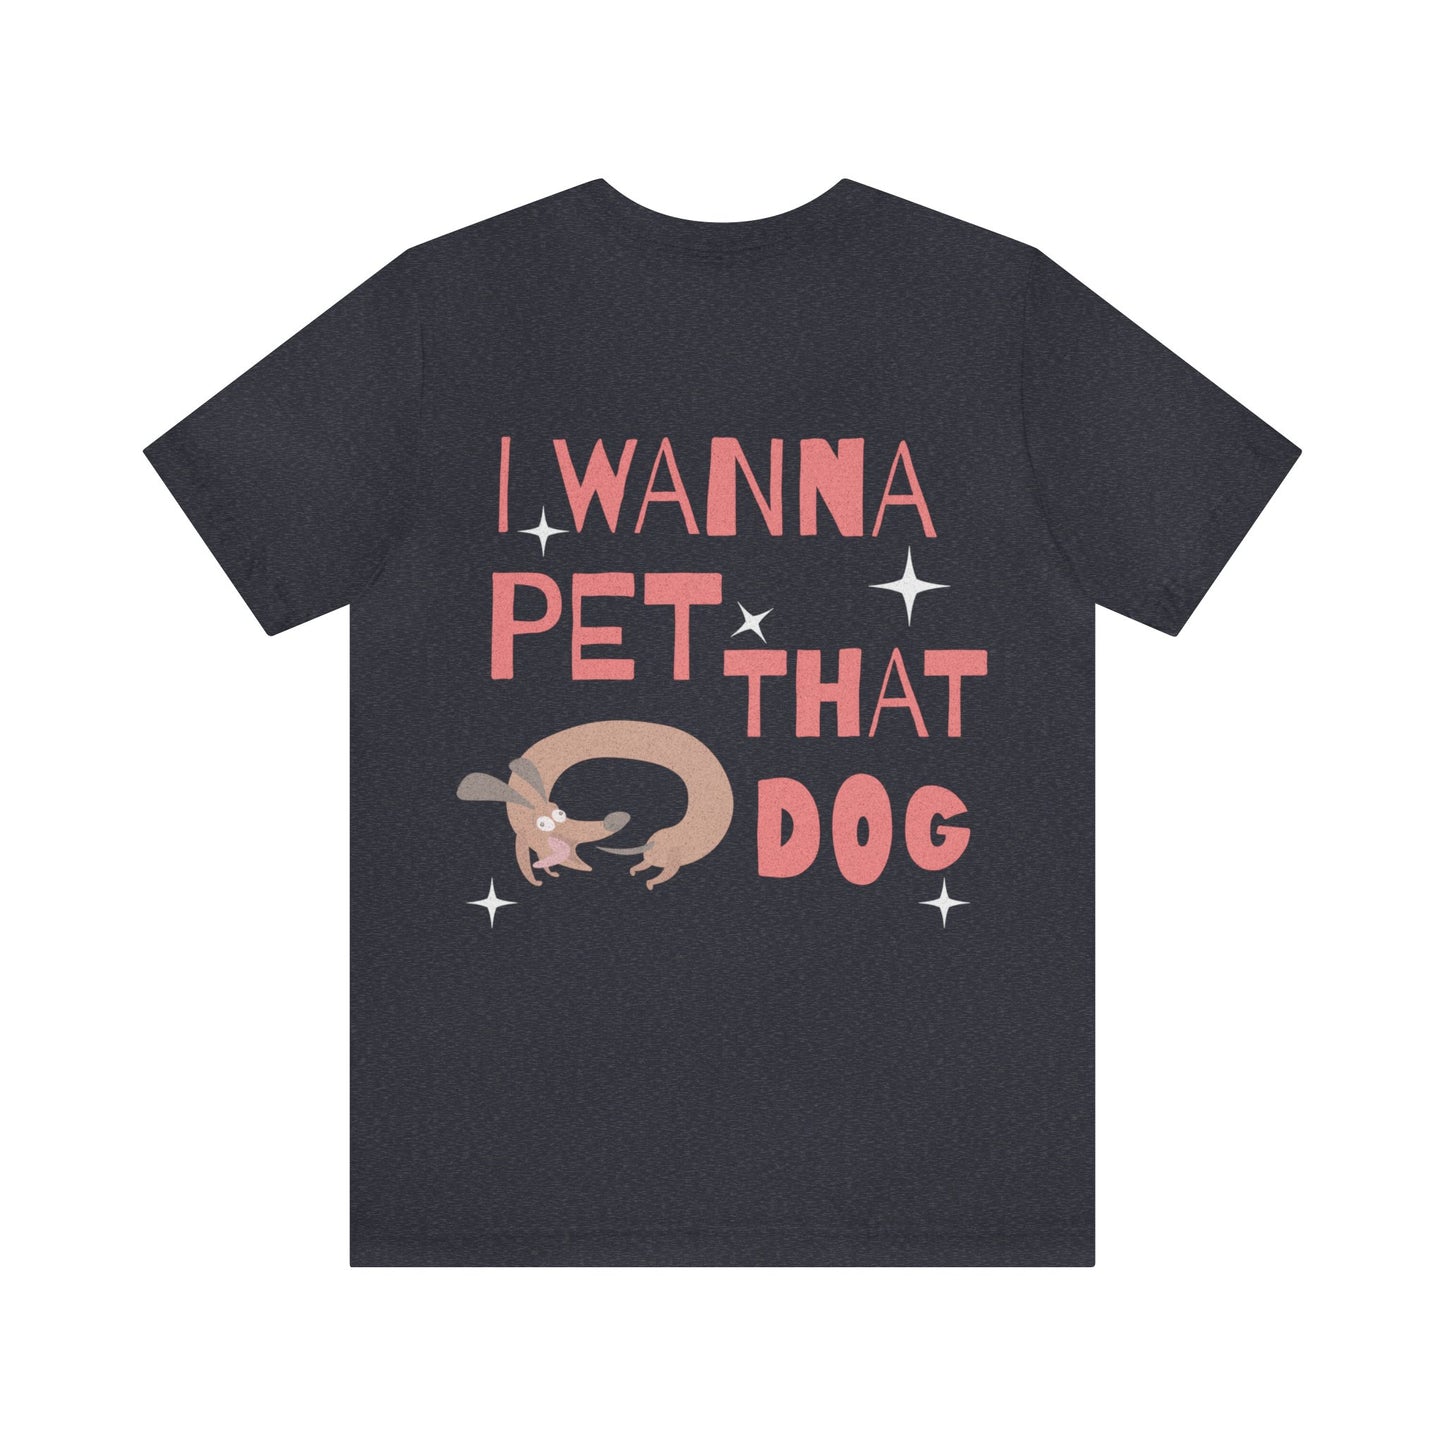 I wanna pet that dog - tshirt - unisex soft tee